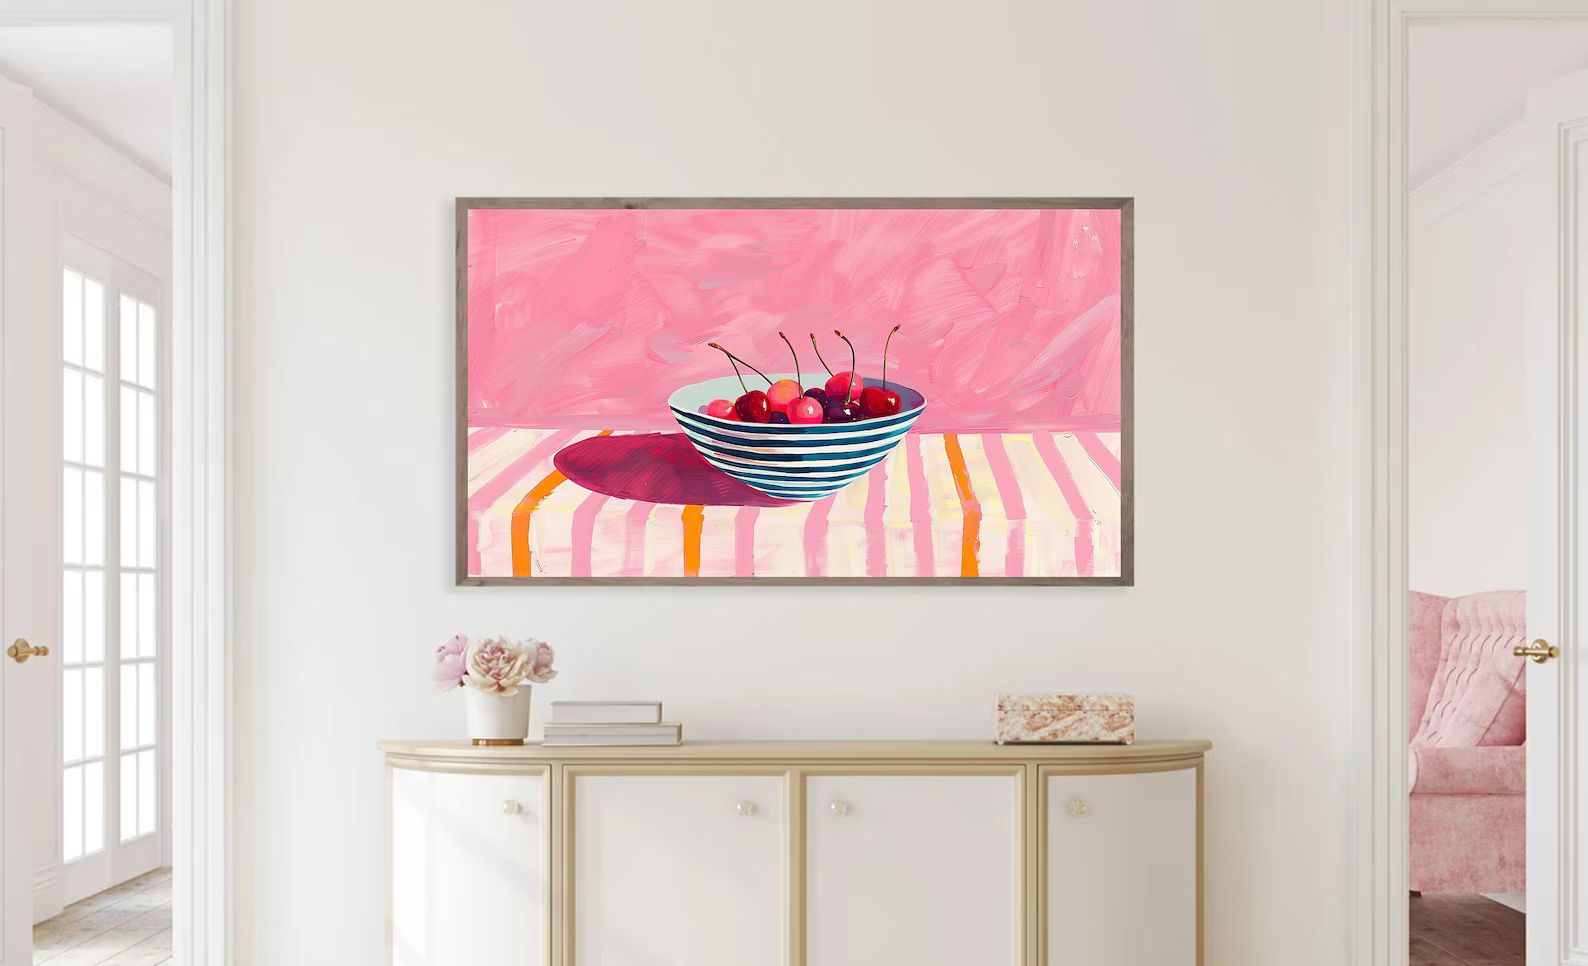 Frame TV Art Colorful Cherry Digital Download for Tv Trendy Still Life Spring or Summer Pink Fram... | Etsy (US)